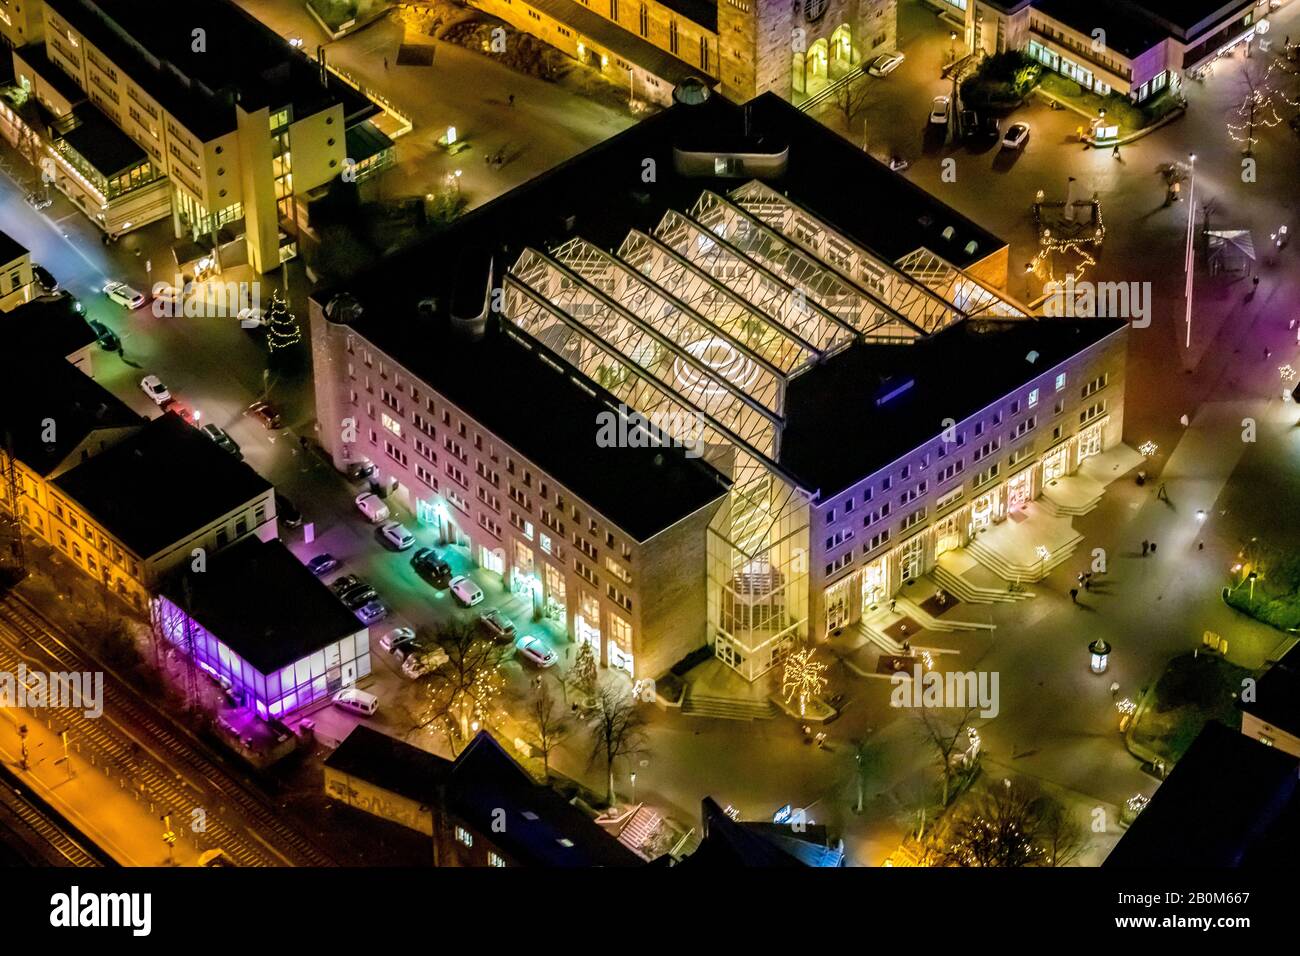 Vol photo aérien au-dessus de l'Unna nocturne, gare centrale d'Unna, gare d'Unna, administration de la ville Unna, hôtel de ville Unna, Unna, région de Ruhr, Nort Banque D'Images